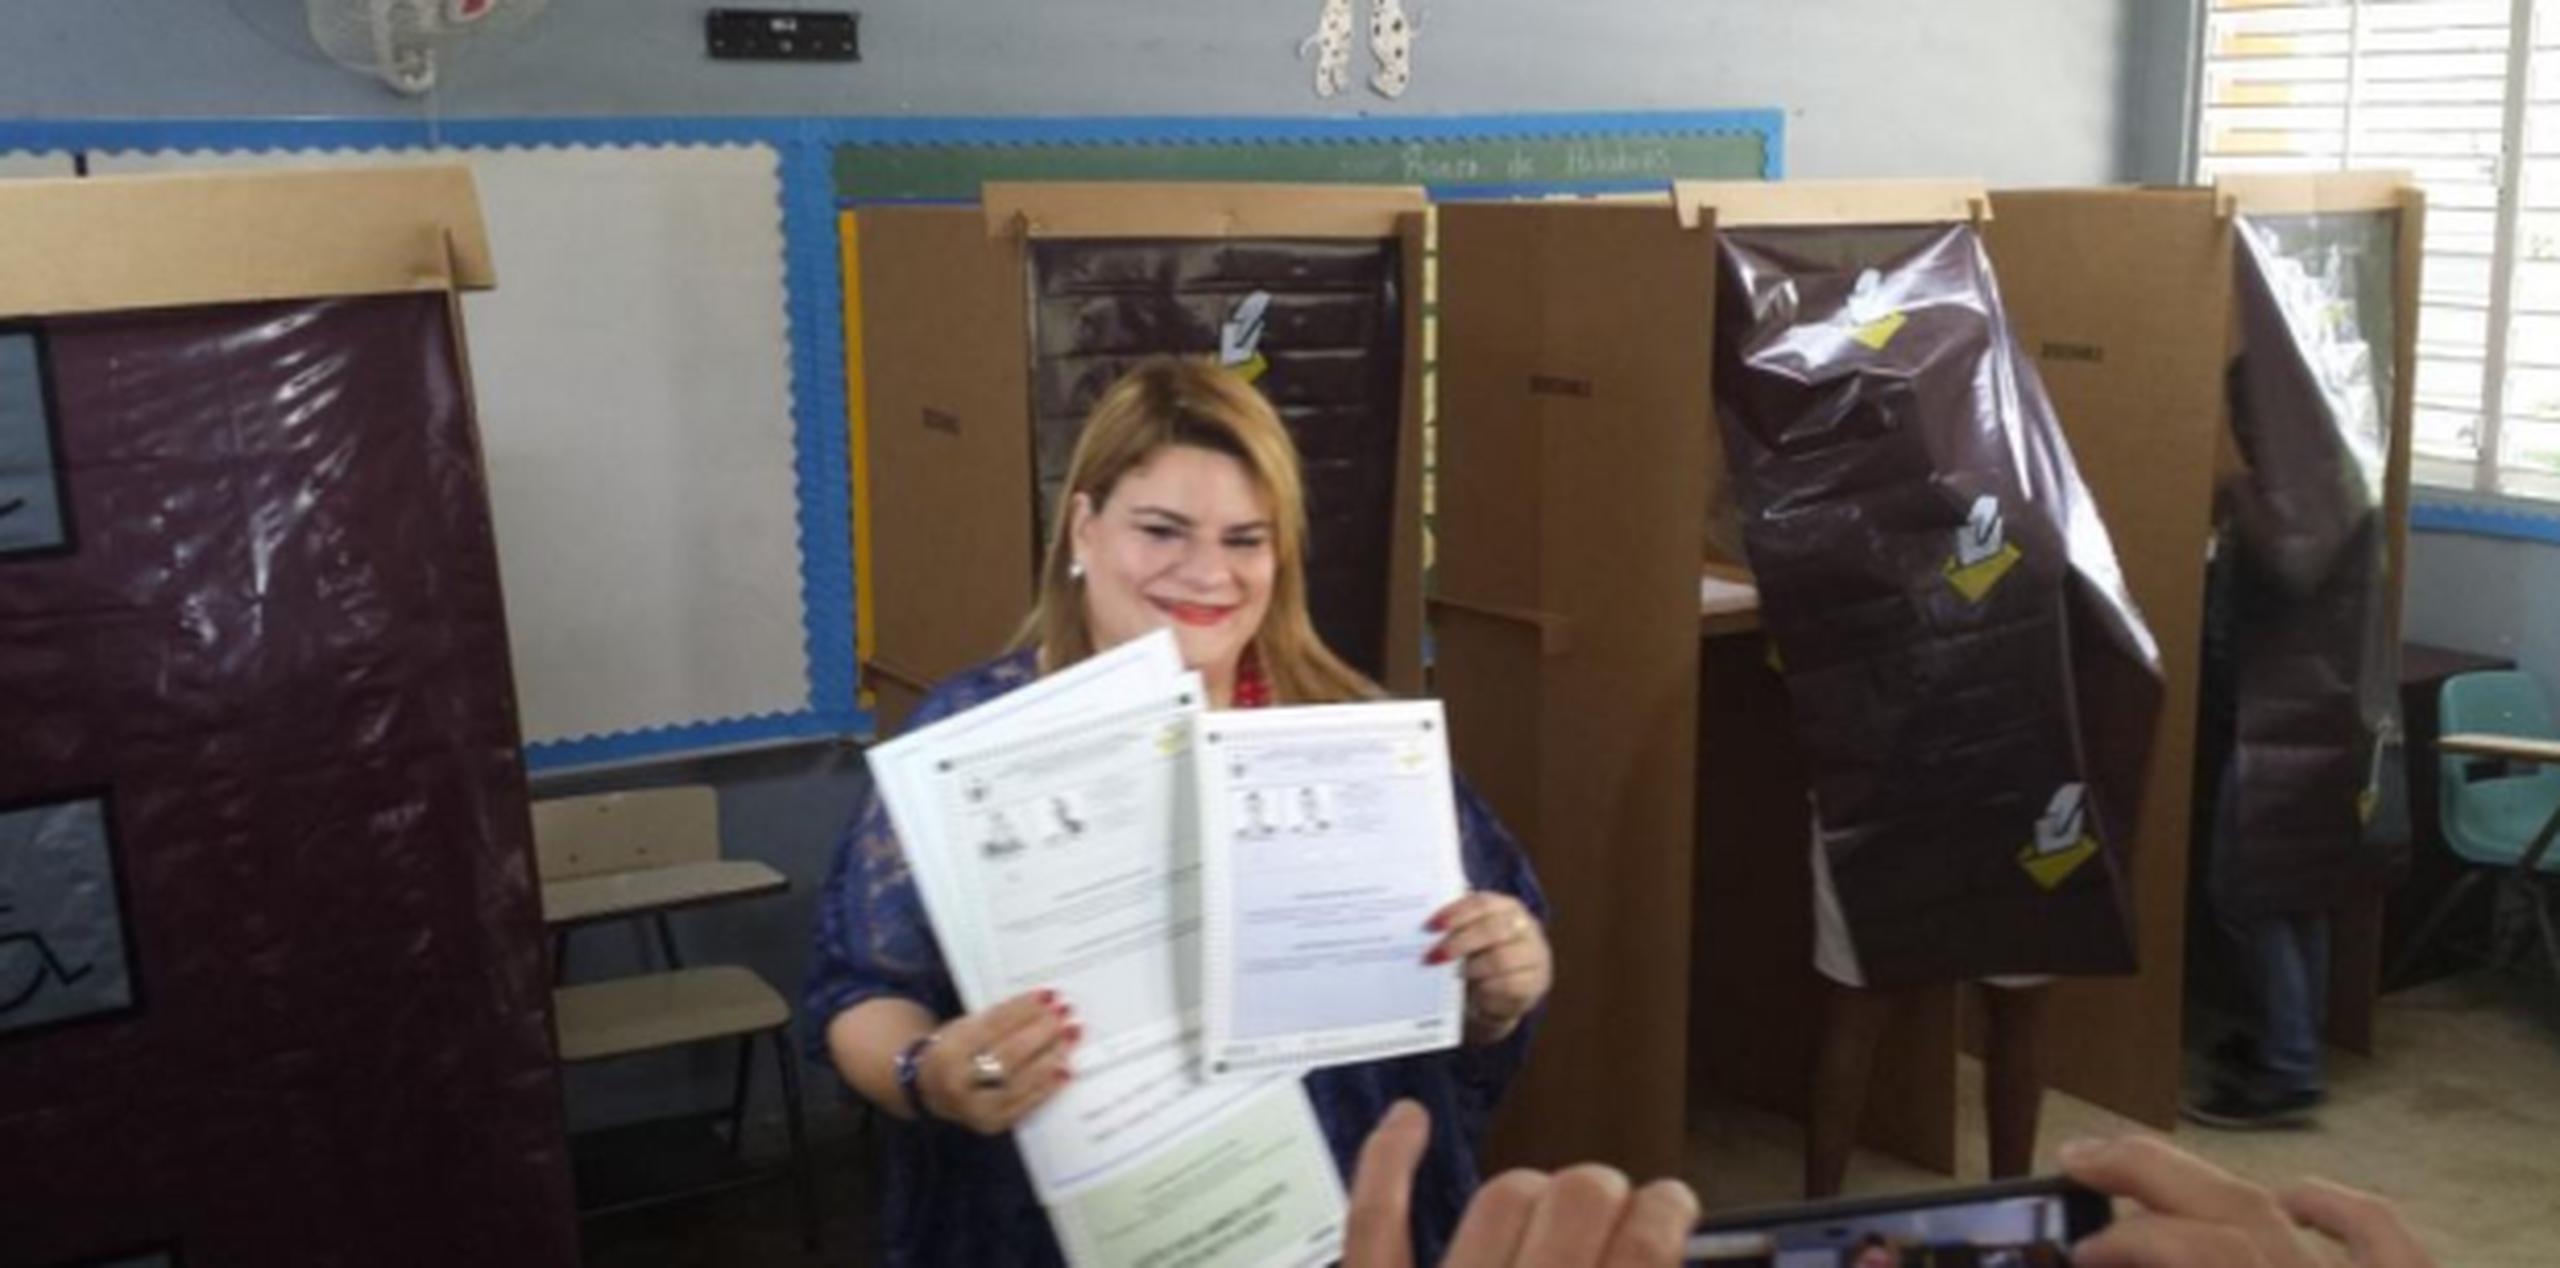 González enseña las papeletas luego de votar. (Liz Sanda Santiago)